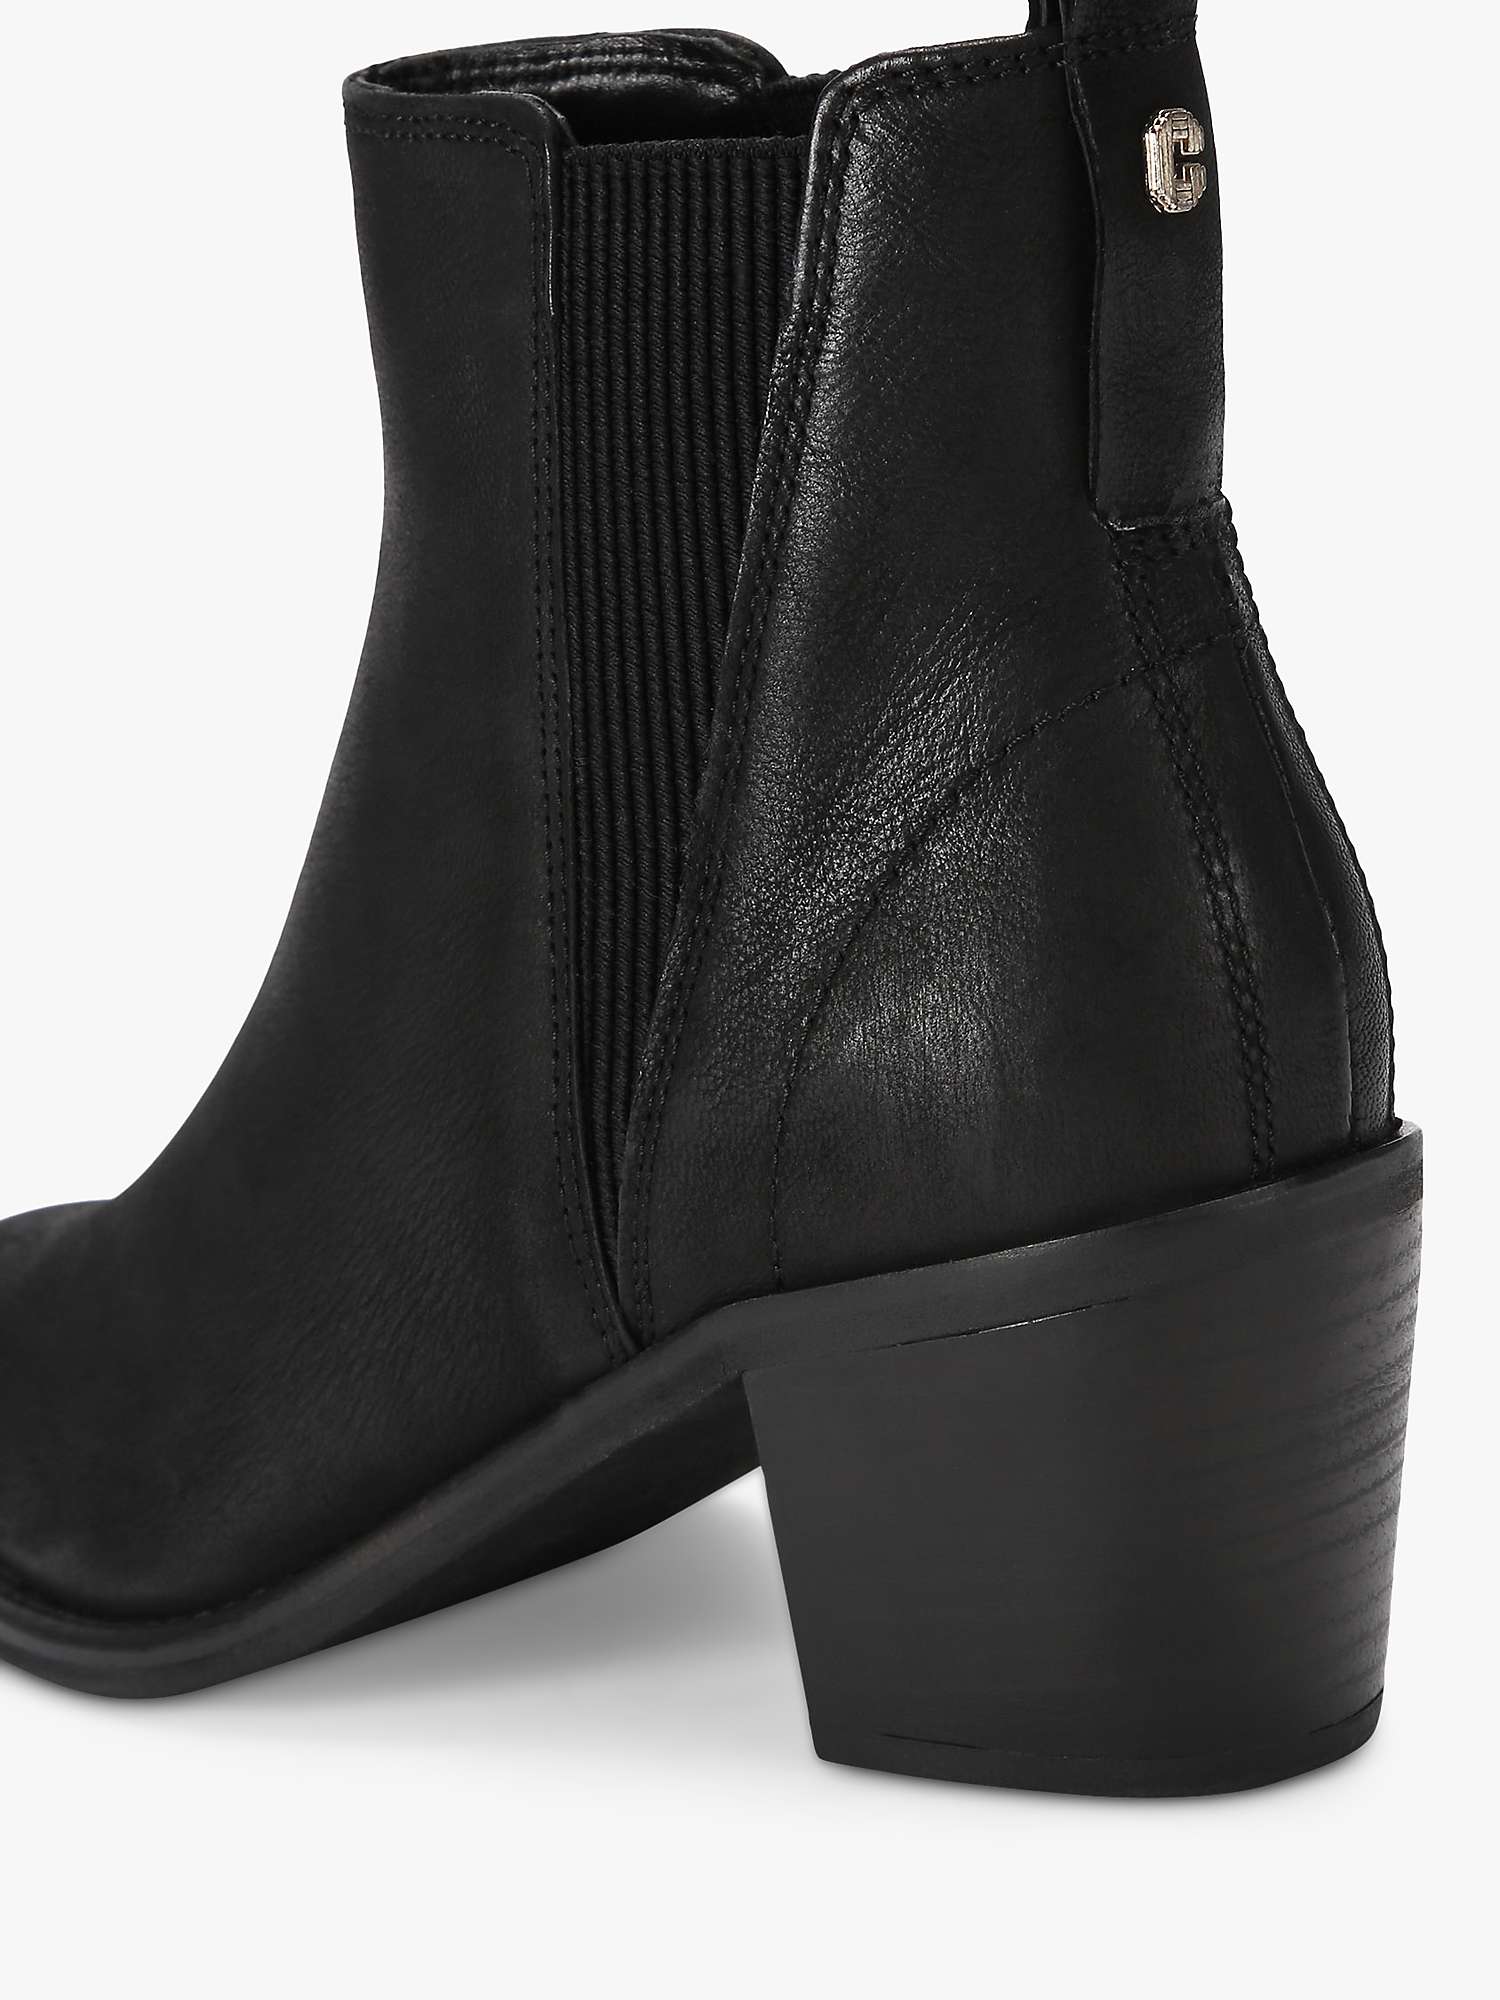 Buy Carvela Secil Nubuck Chelsea Boots, Black Online at johnlewis.com